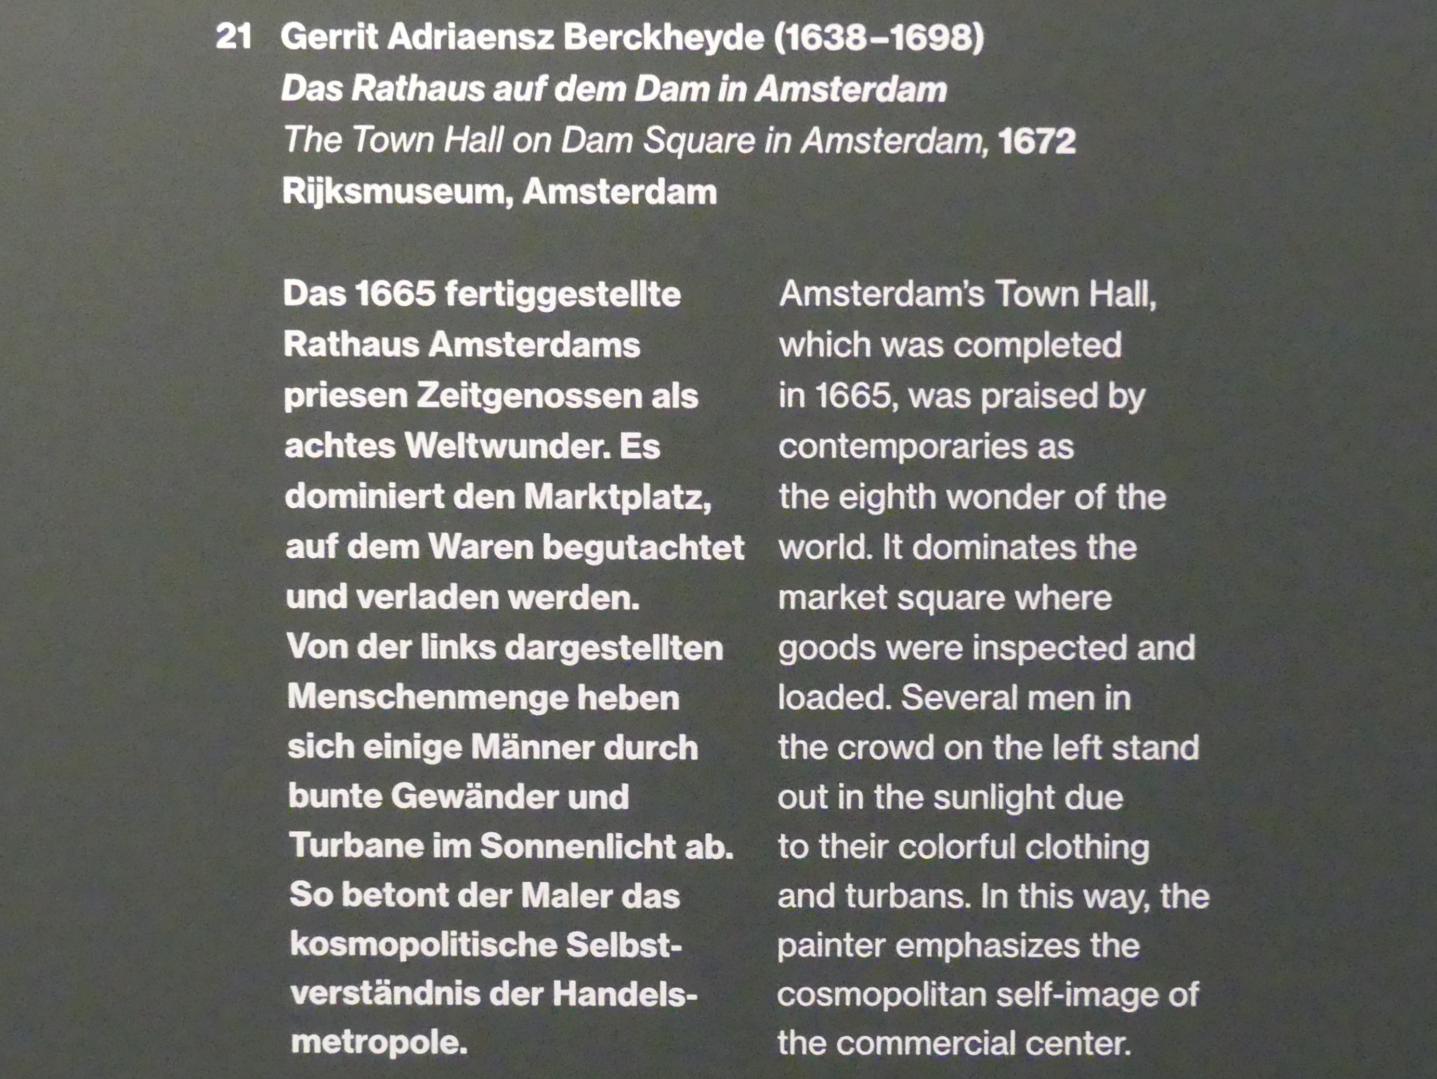 Gerrit Adriaenszoon Berckheyde (1661–1690), Das Rathaus auf dem Dam in Amsterdam, Potsdam, Museum Barberini, Ausstellung "Rembrandts Orient" vom 13.03.-27.06.2021, Saal A2, 1672, Bild 2/2